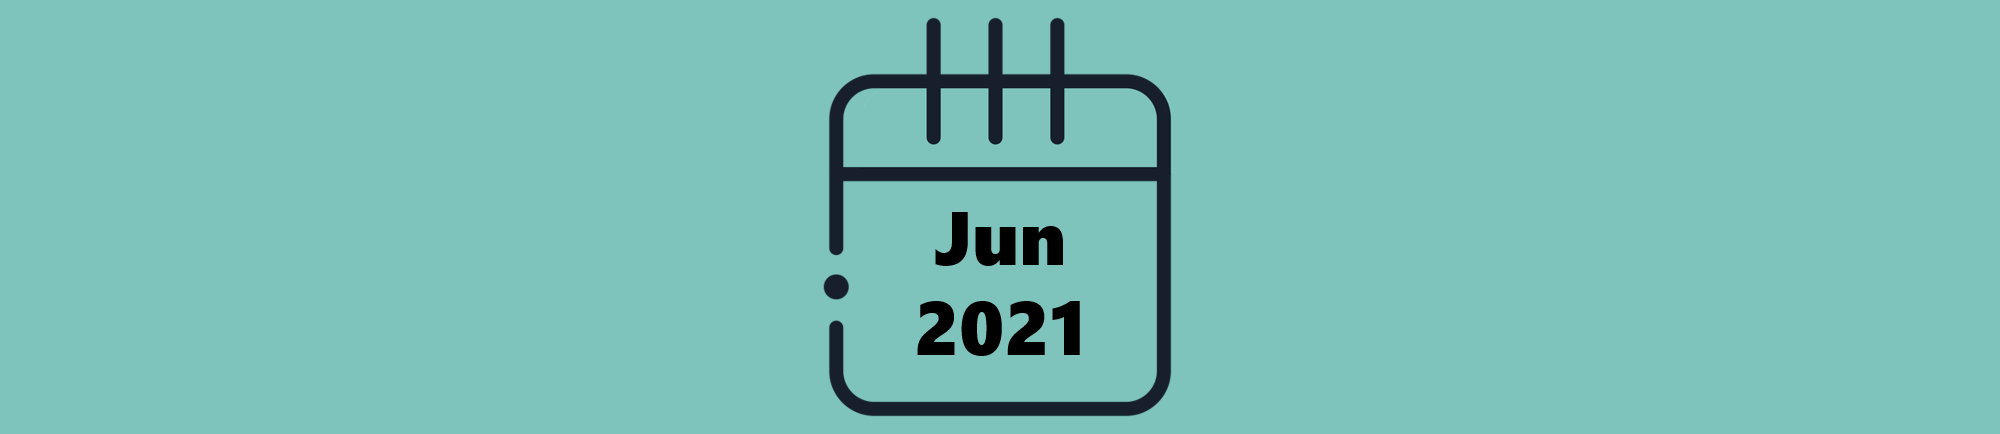 Indicações do Mês de Junho (2021)